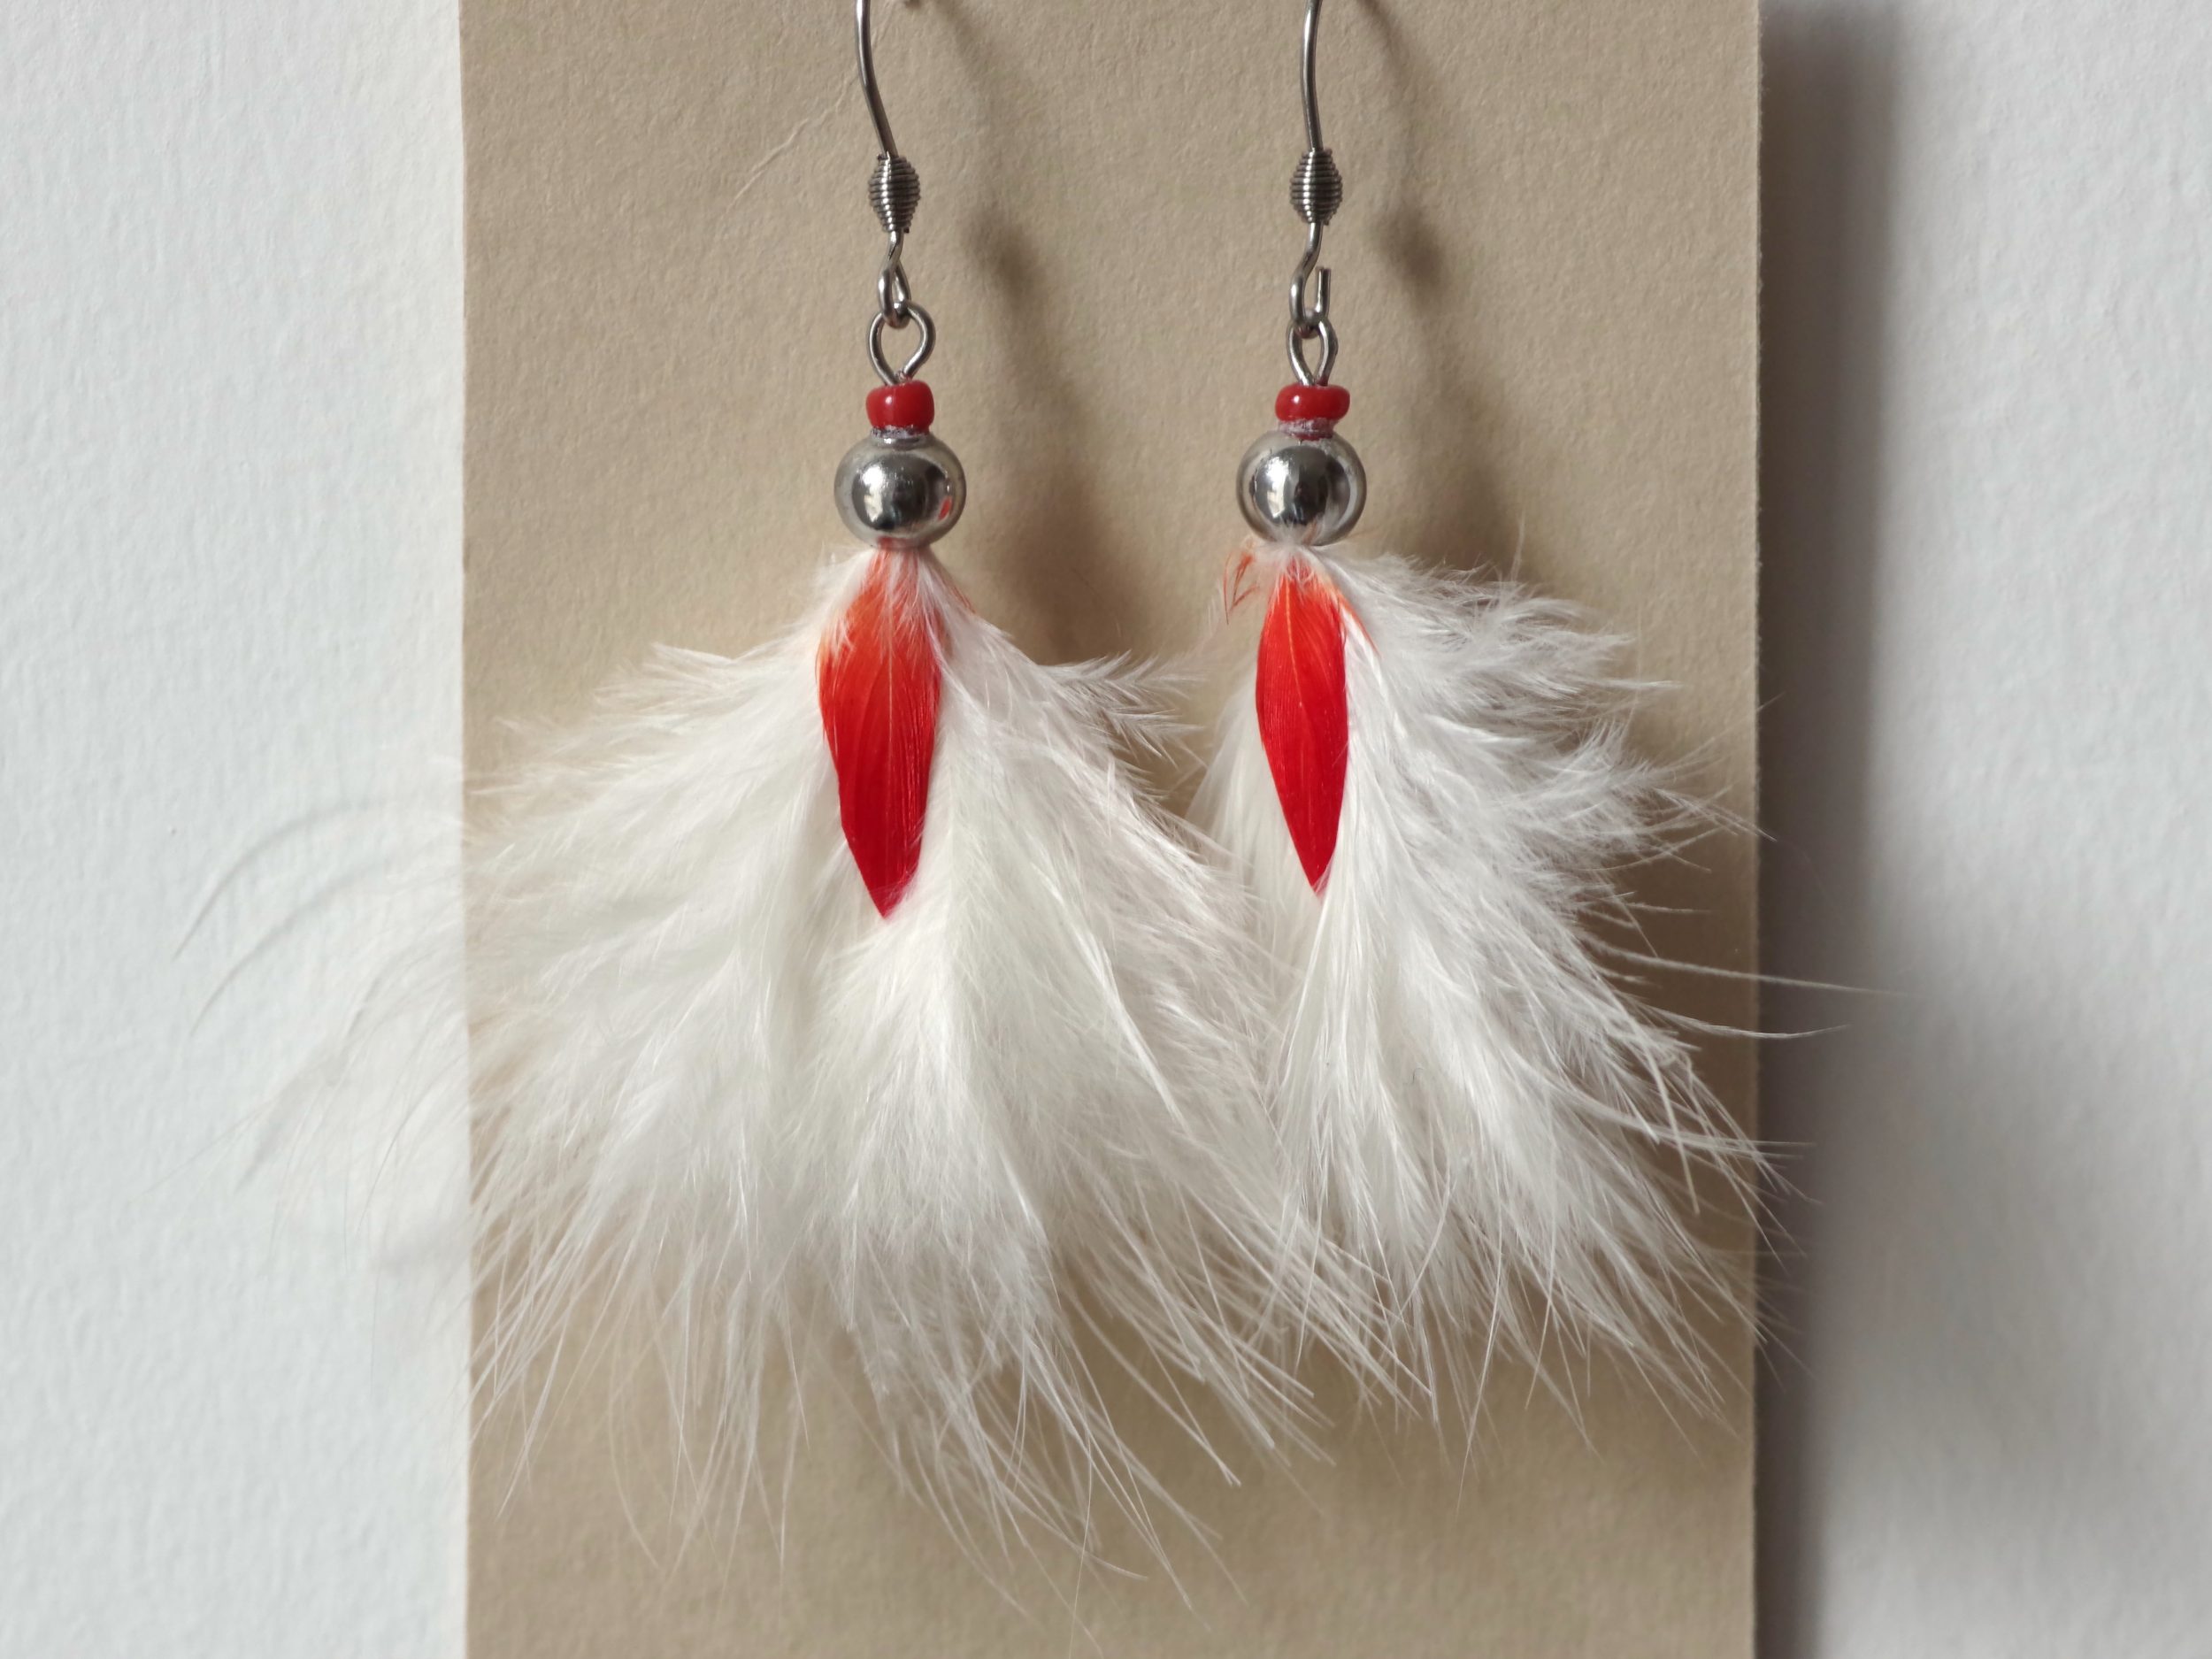 boucles d'oreilles rouge et blanc, plumes duveteuses blanches disposées en pompon, avec une petite plume rouge au milieu